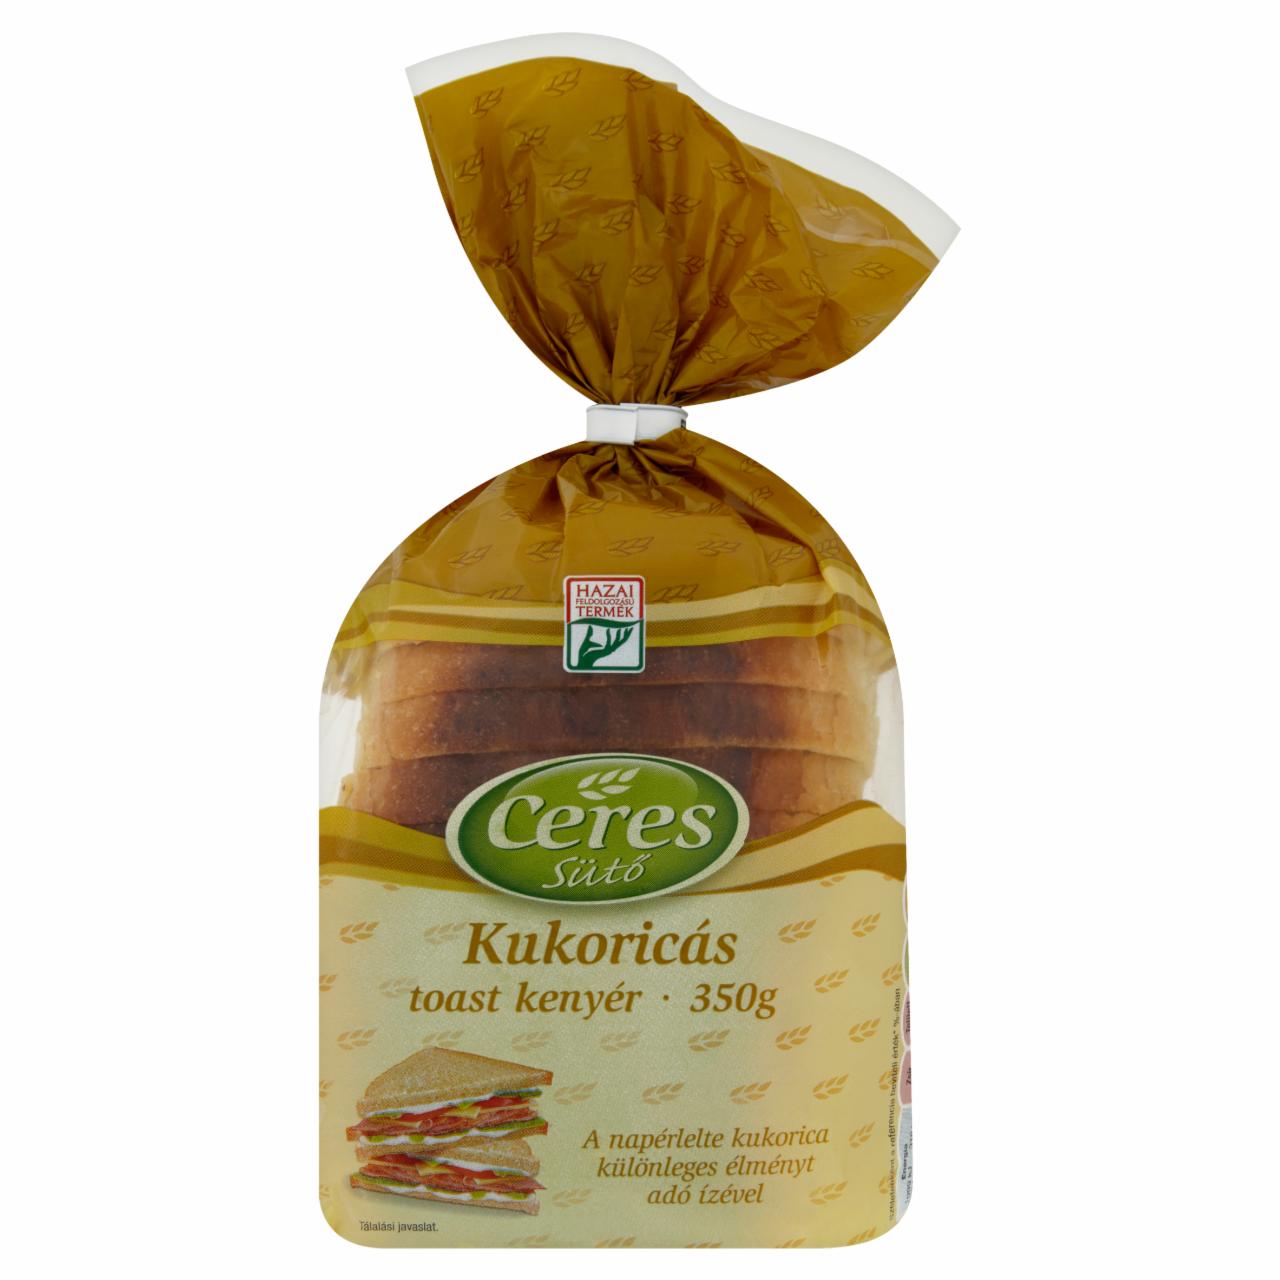 Képek - Ceres Sütő kukoricás toast kenyér 350 g